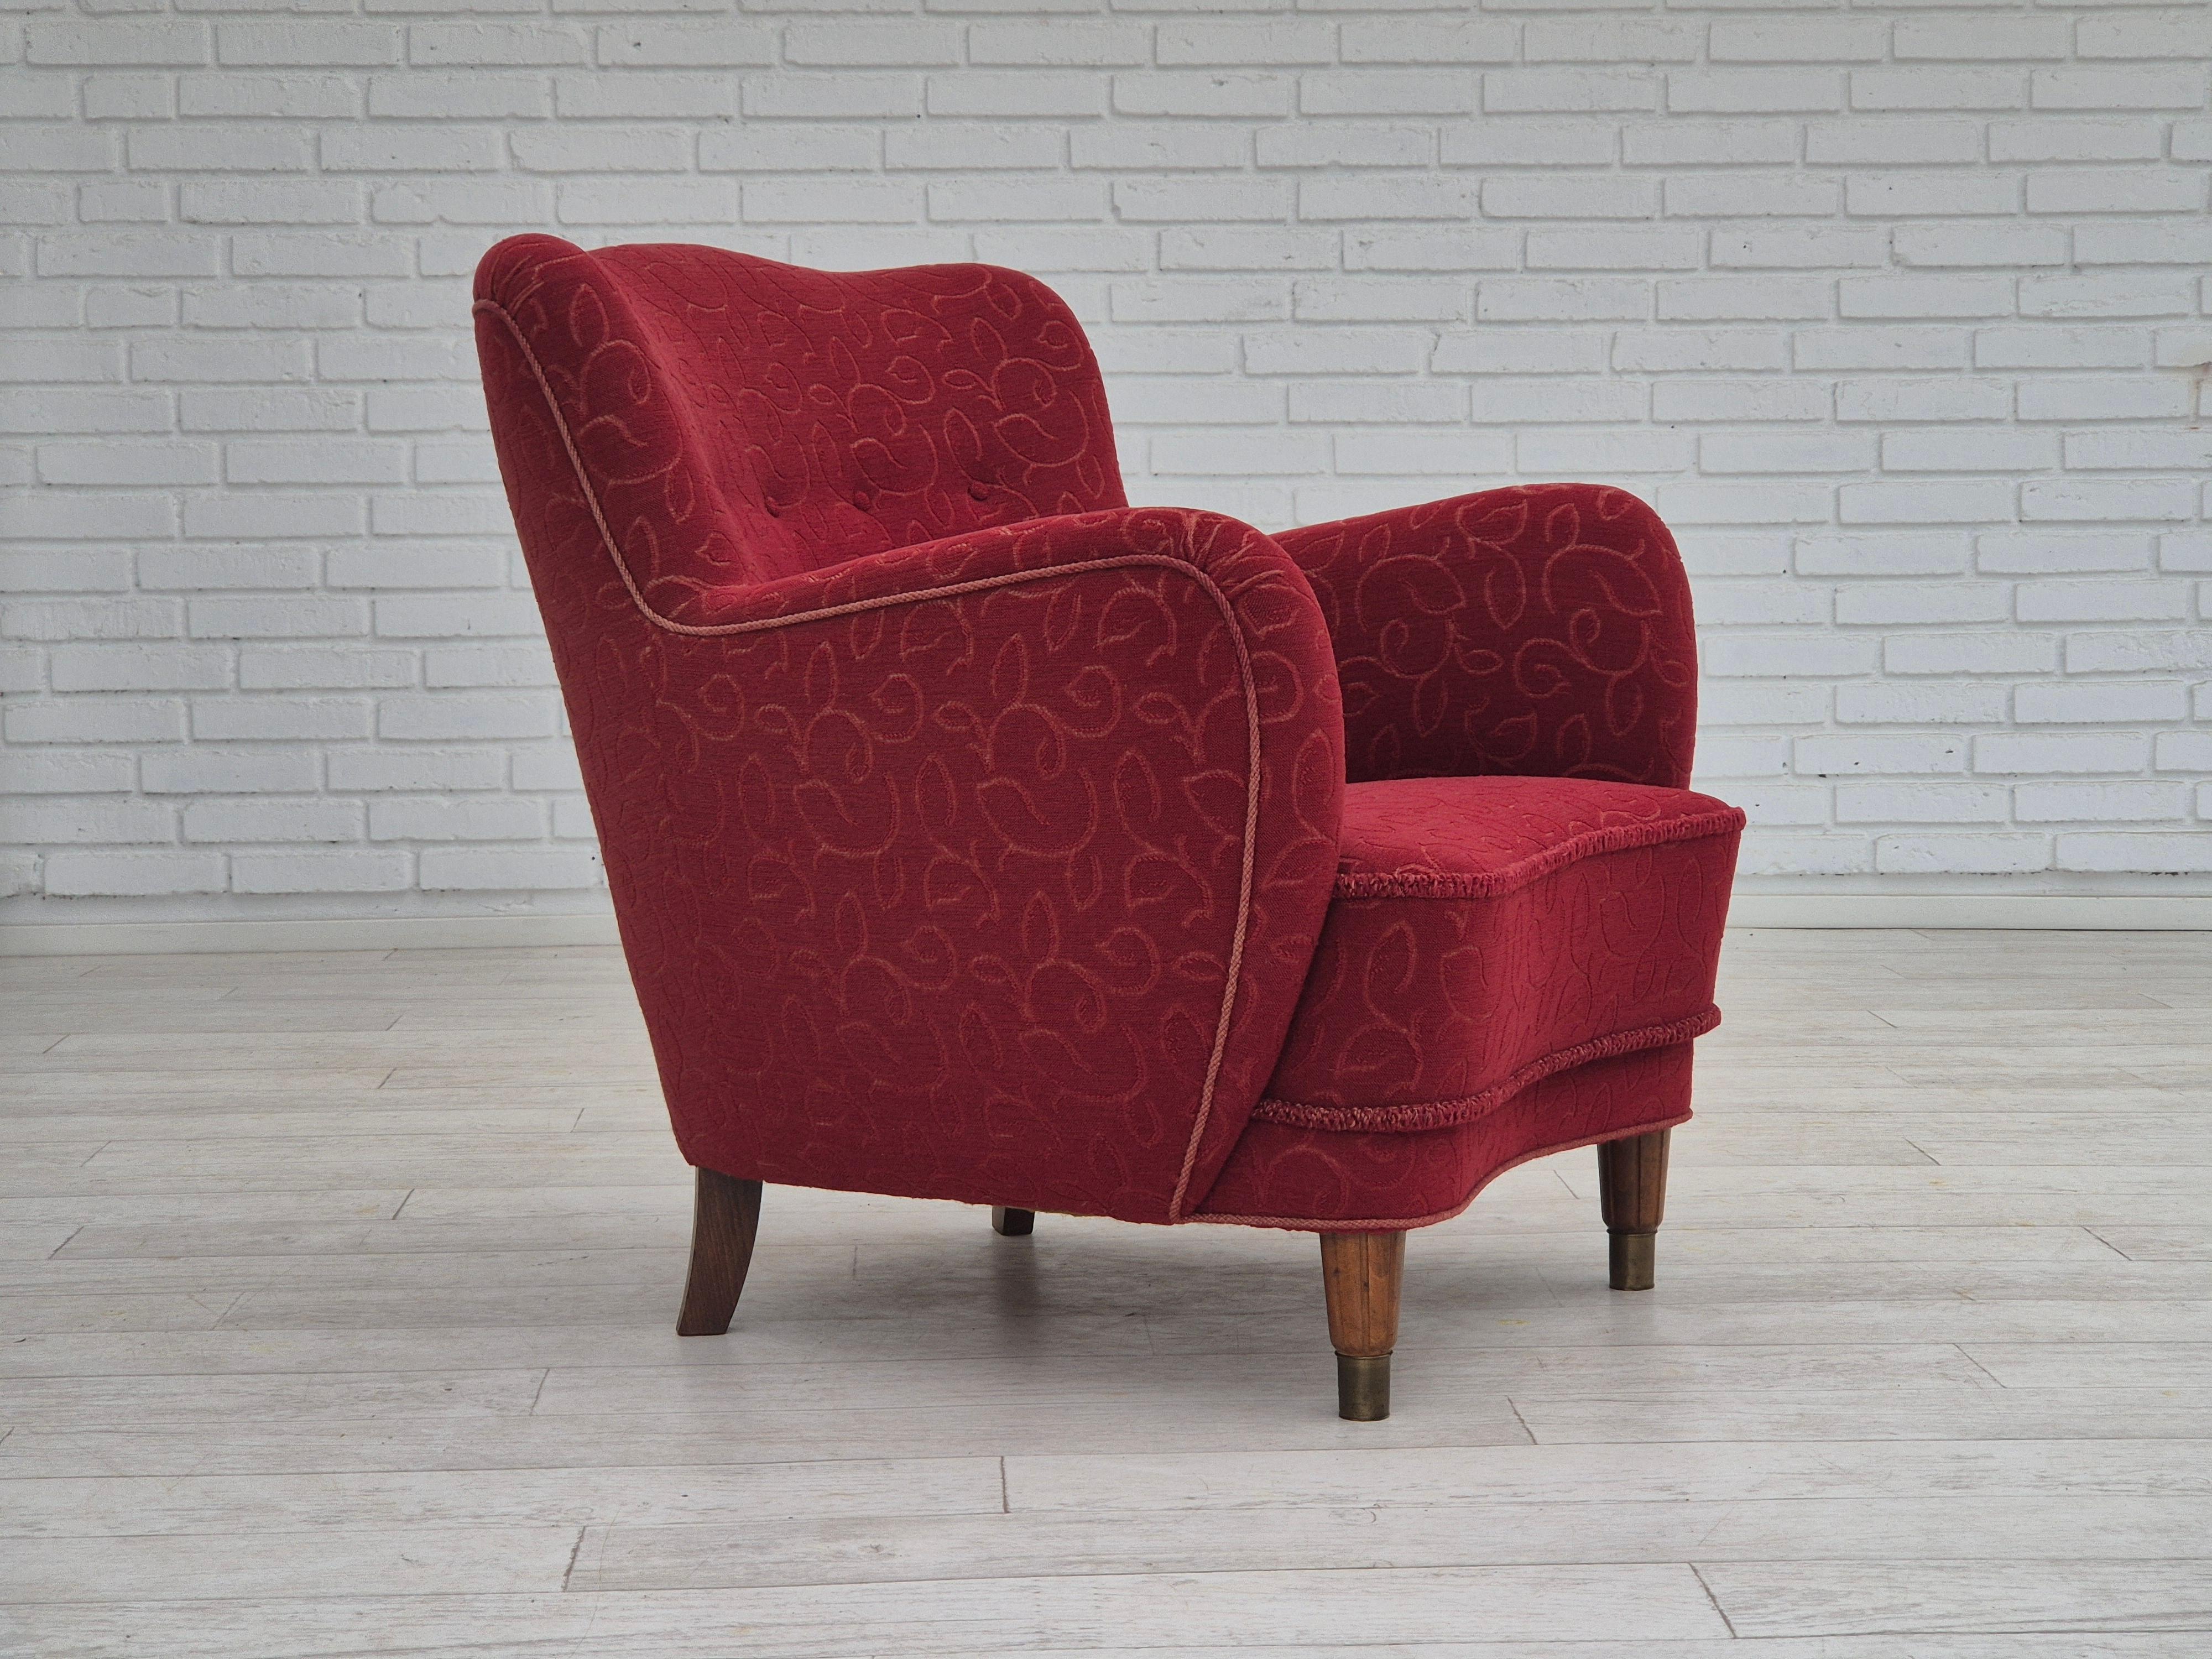 1960er Jahre, Dänisches Design. Sessel in sehr gutem Originalzustand: keine Gerüche und keine Flecken. Original roter Möbelstoff aus Watte. Buchenholzbeine mit Messingdübeln, Messingfedern in der Sitzfläche. Hergestellt von einem dänischen